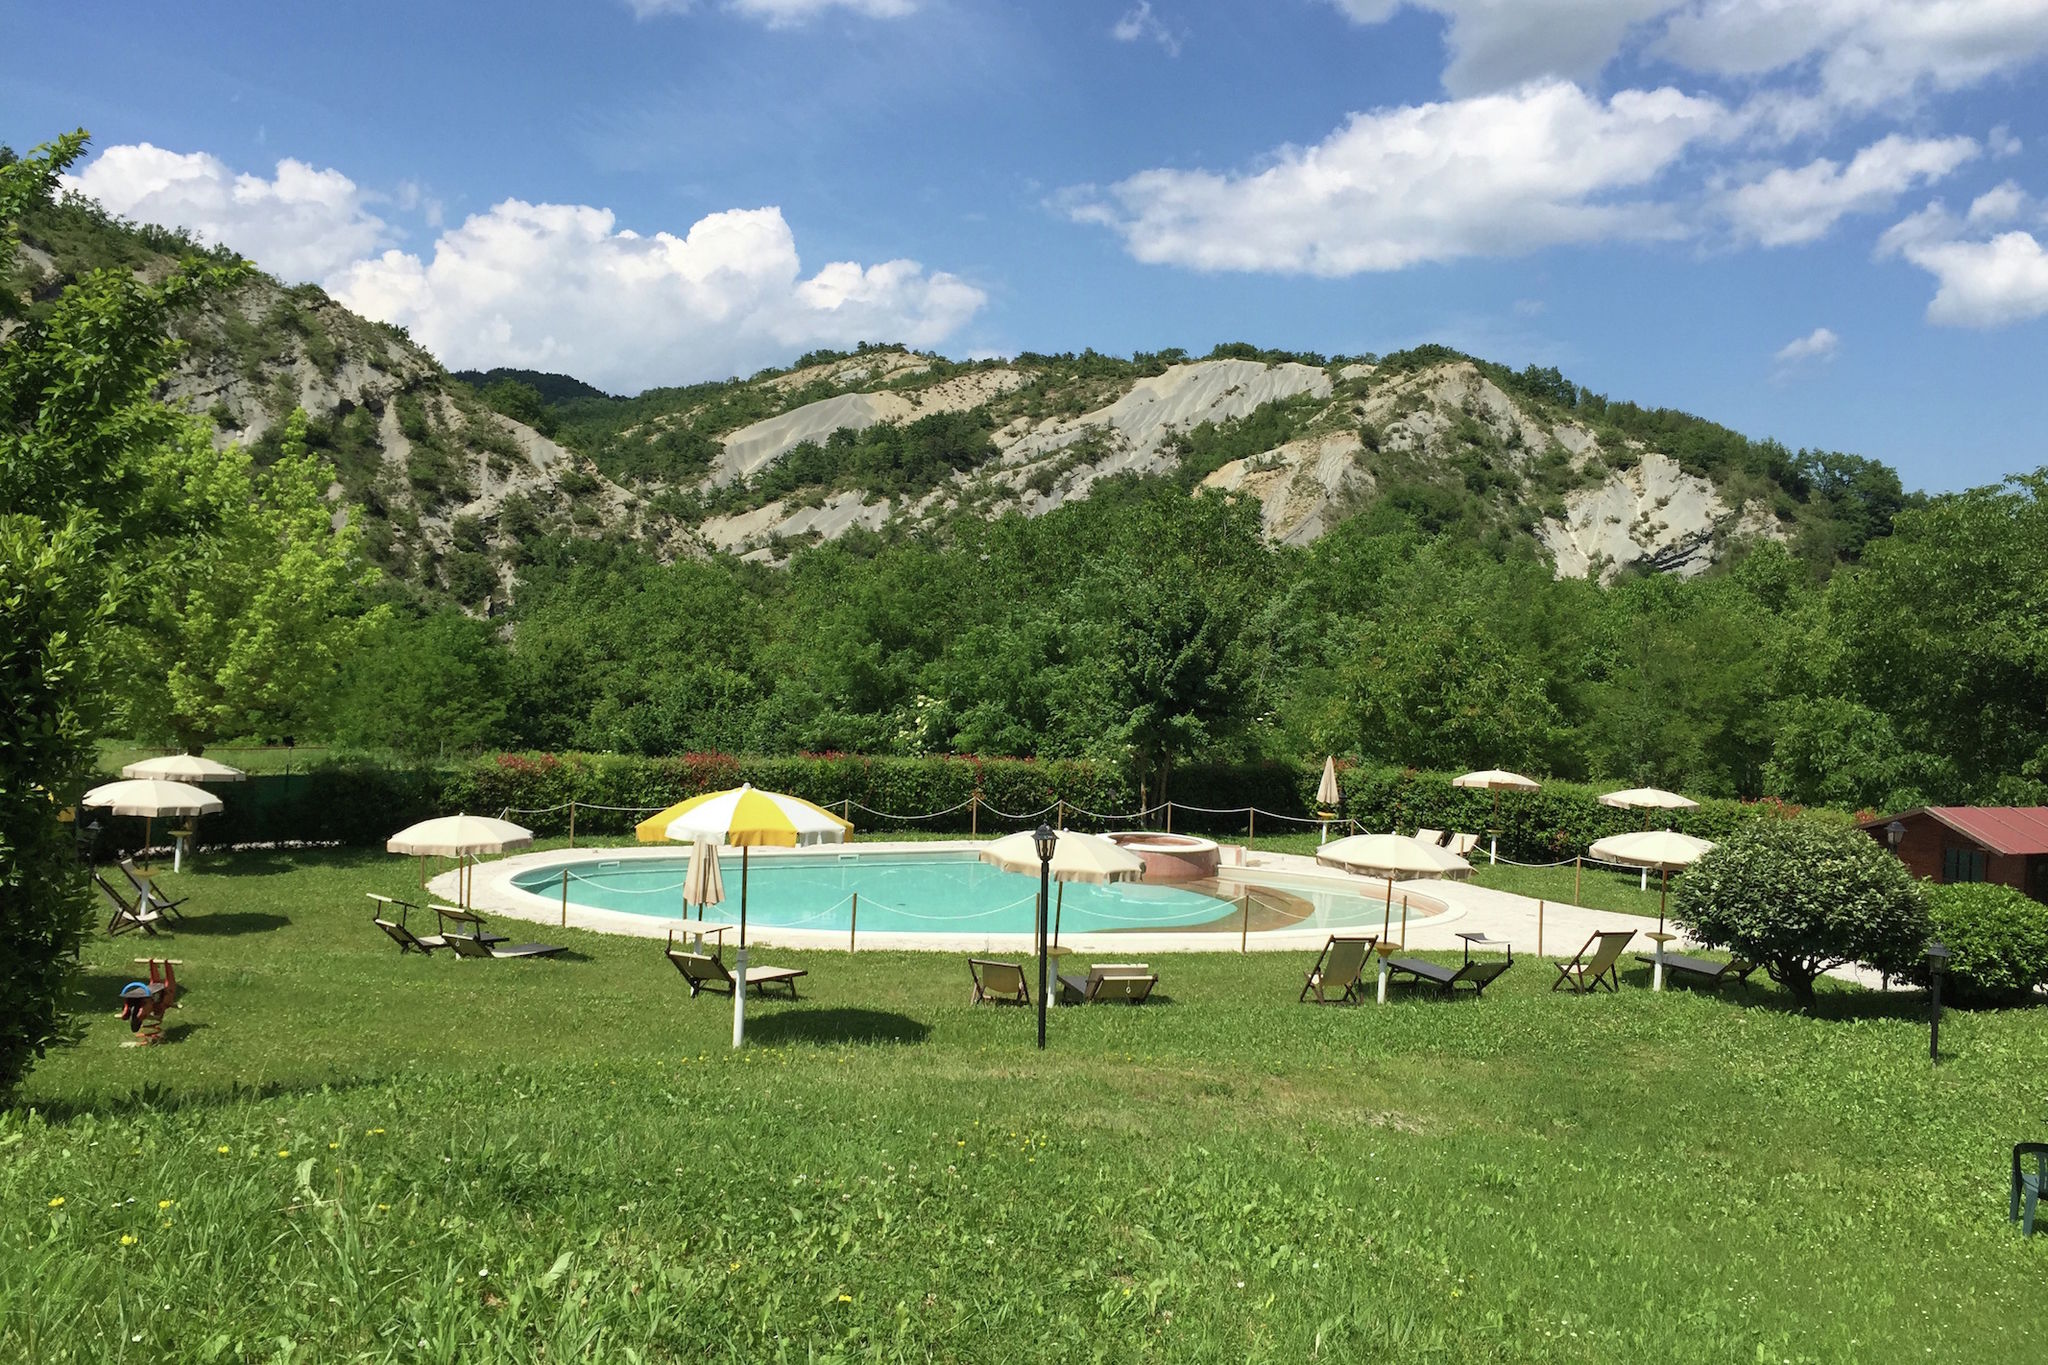 Ferienhaus in Apecchio mit Swimmingpool